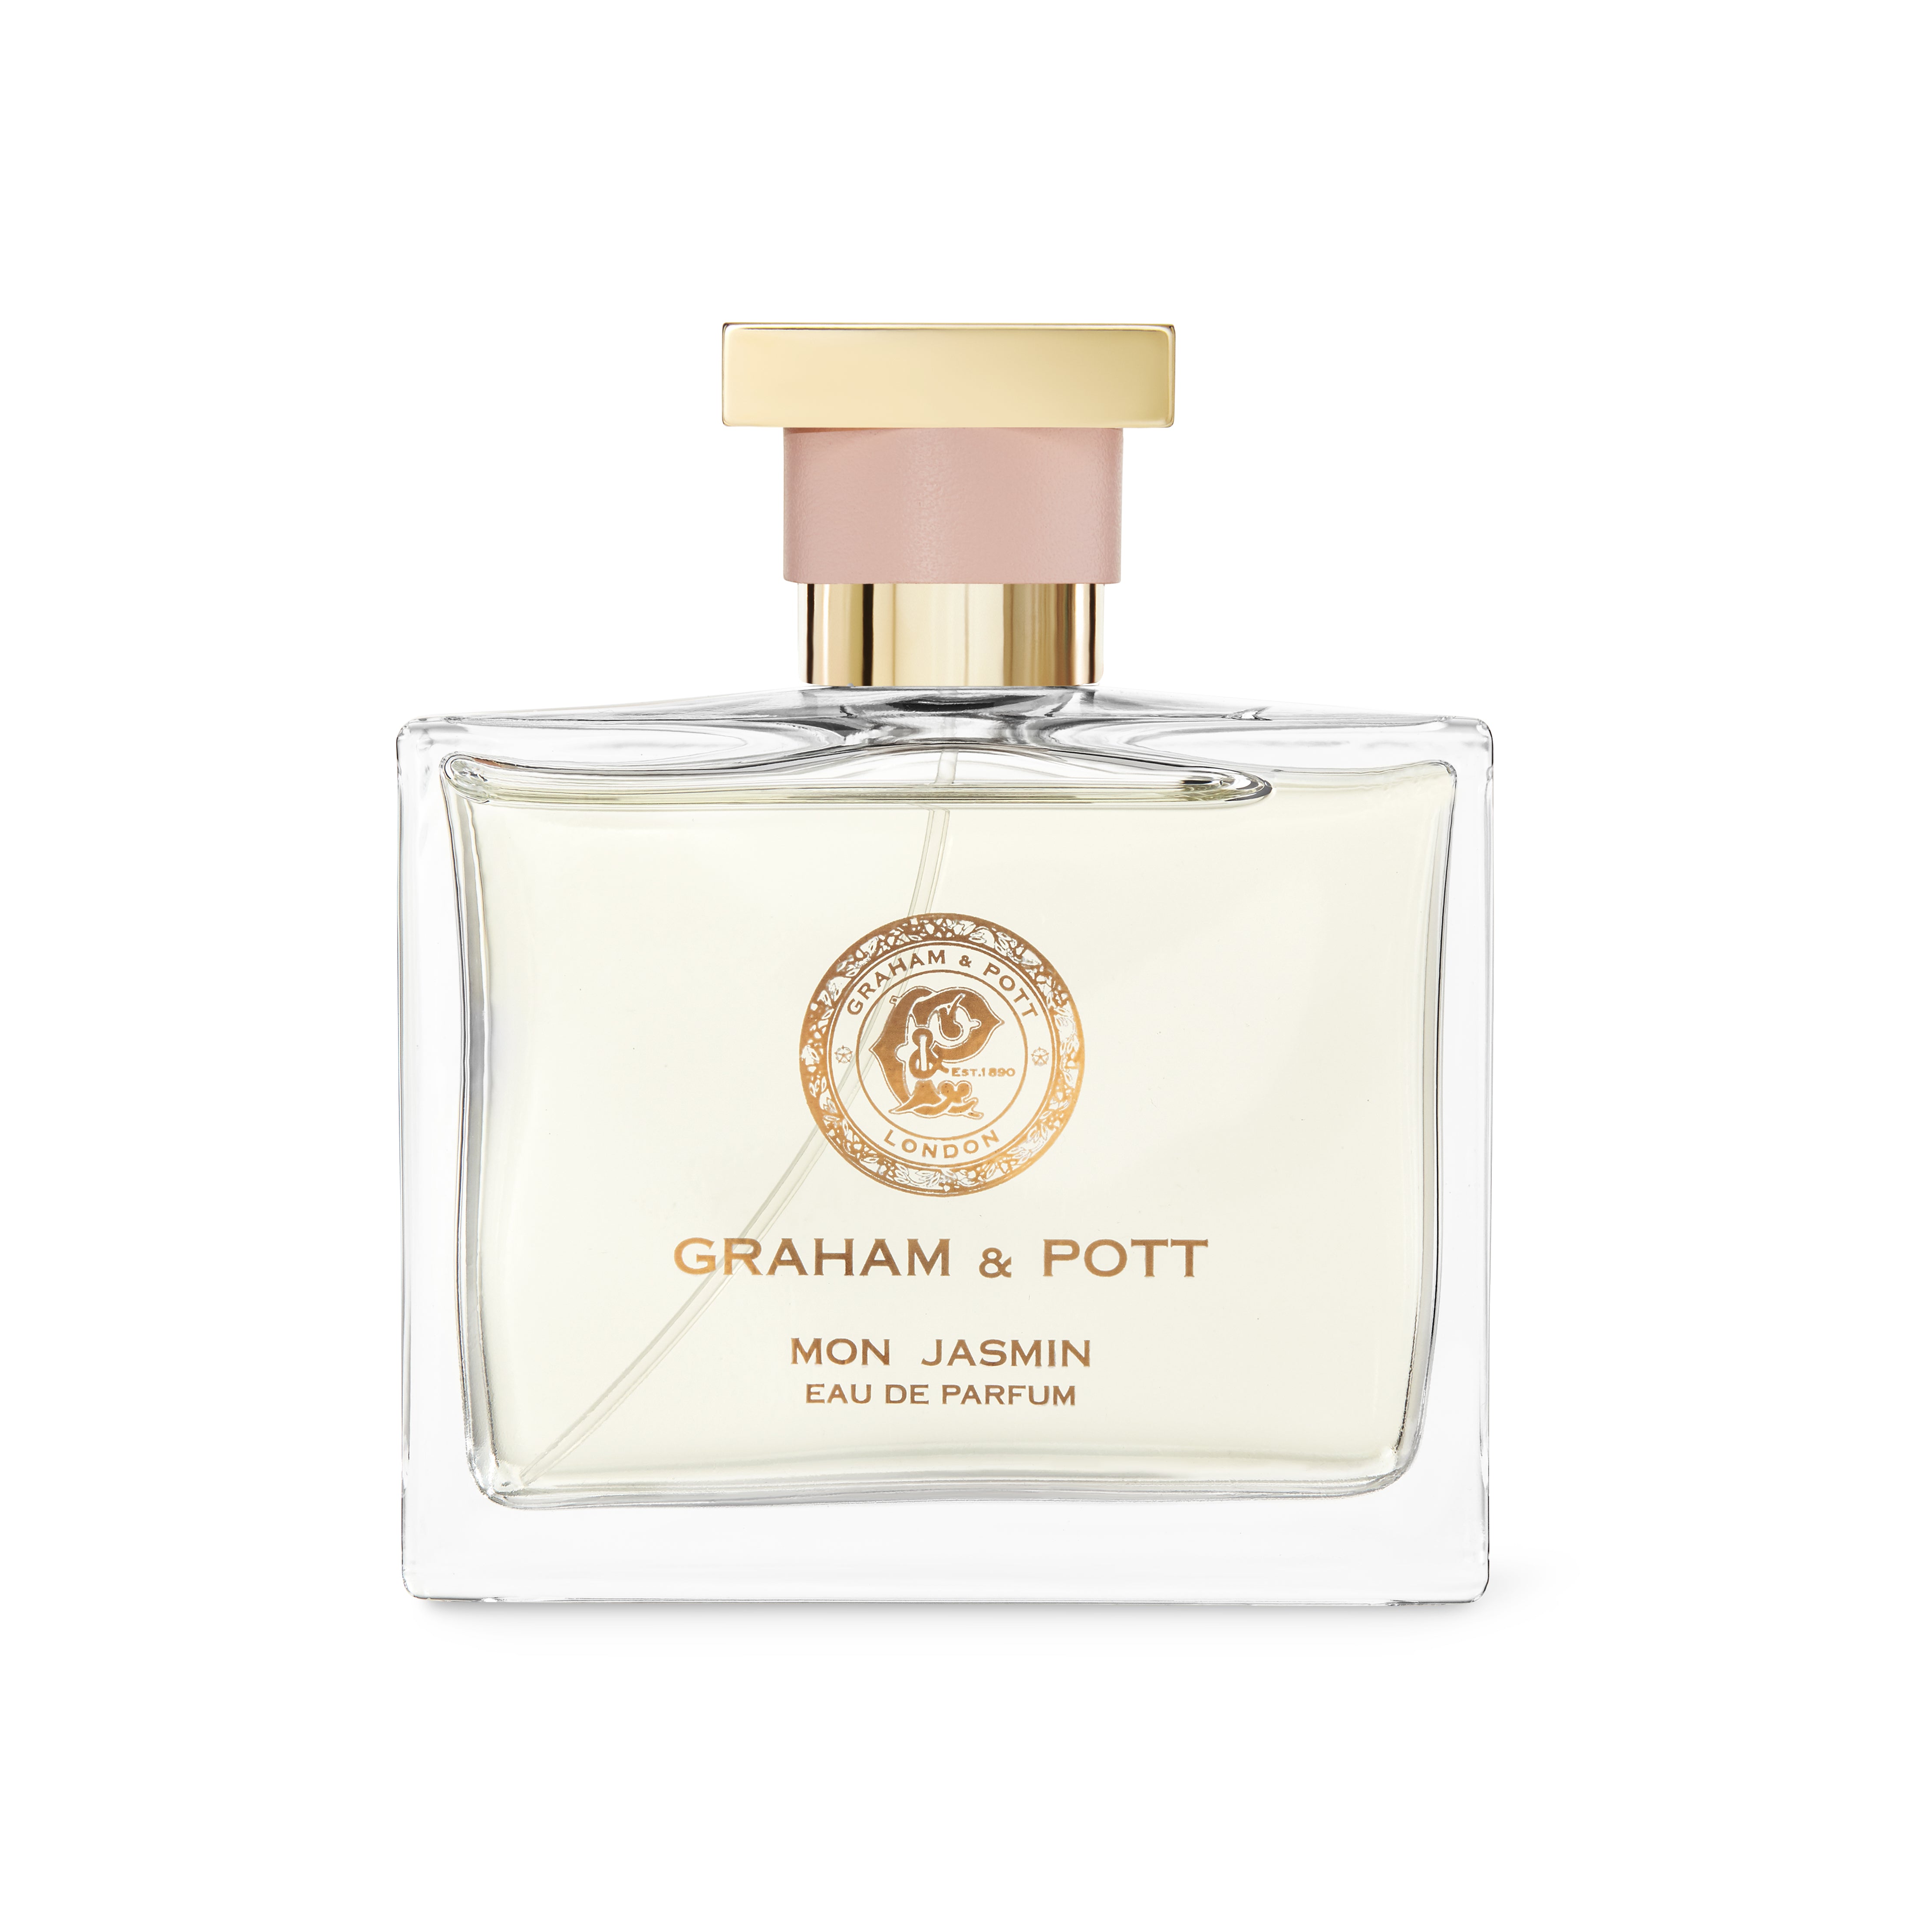 MON JASMIN Eau De Parfum - GRAHAM & POTT